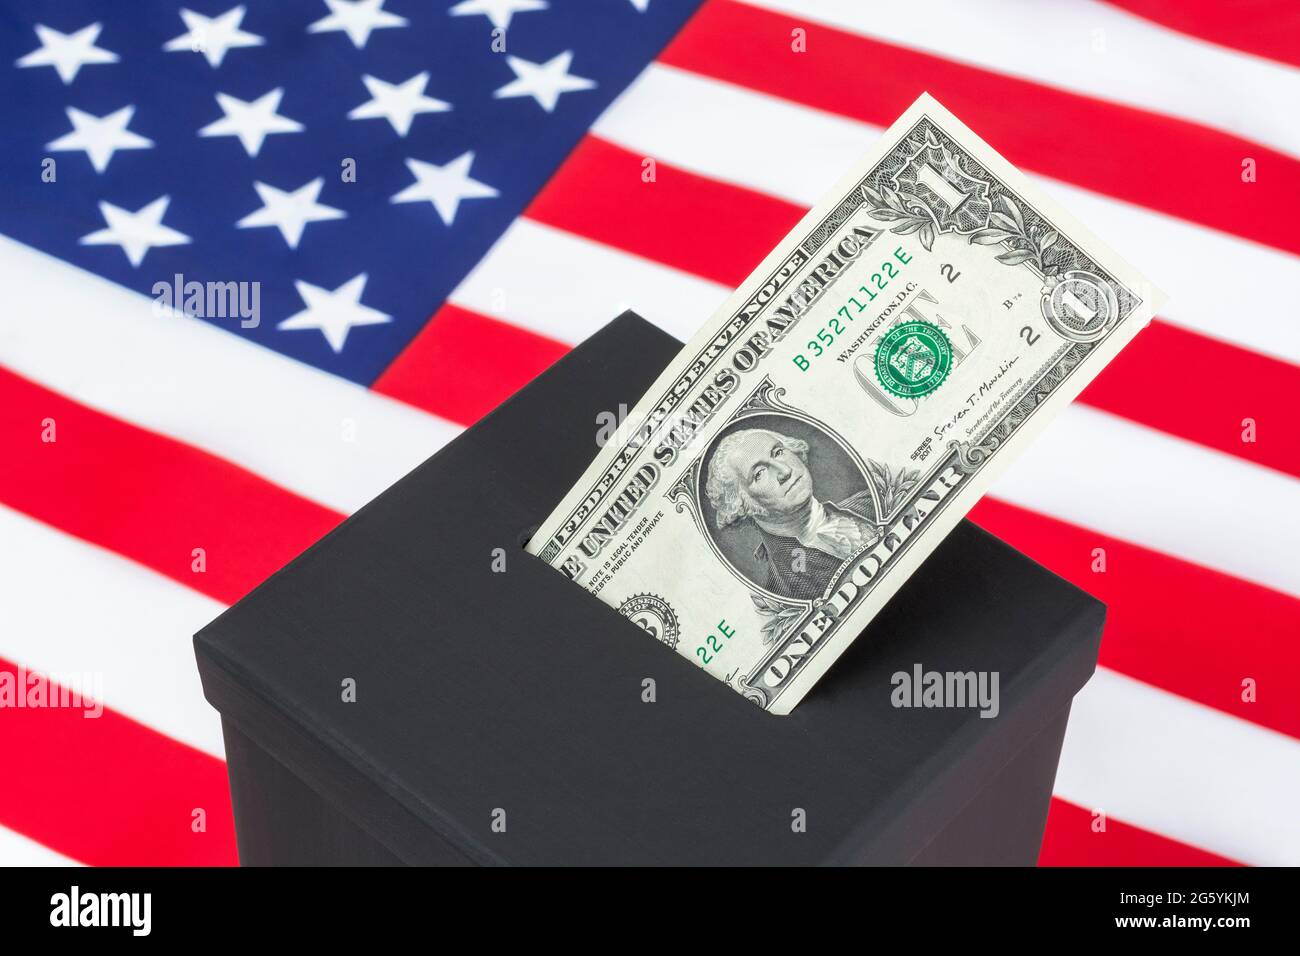 BILLET de 1 dollar US / 1 dollar avec George Washington sur le côté opposé + une fausse boîte de vote électorale et Stars & Stripes. Pour acheter des votes, des collectes de fonds politiques Banque D'Images